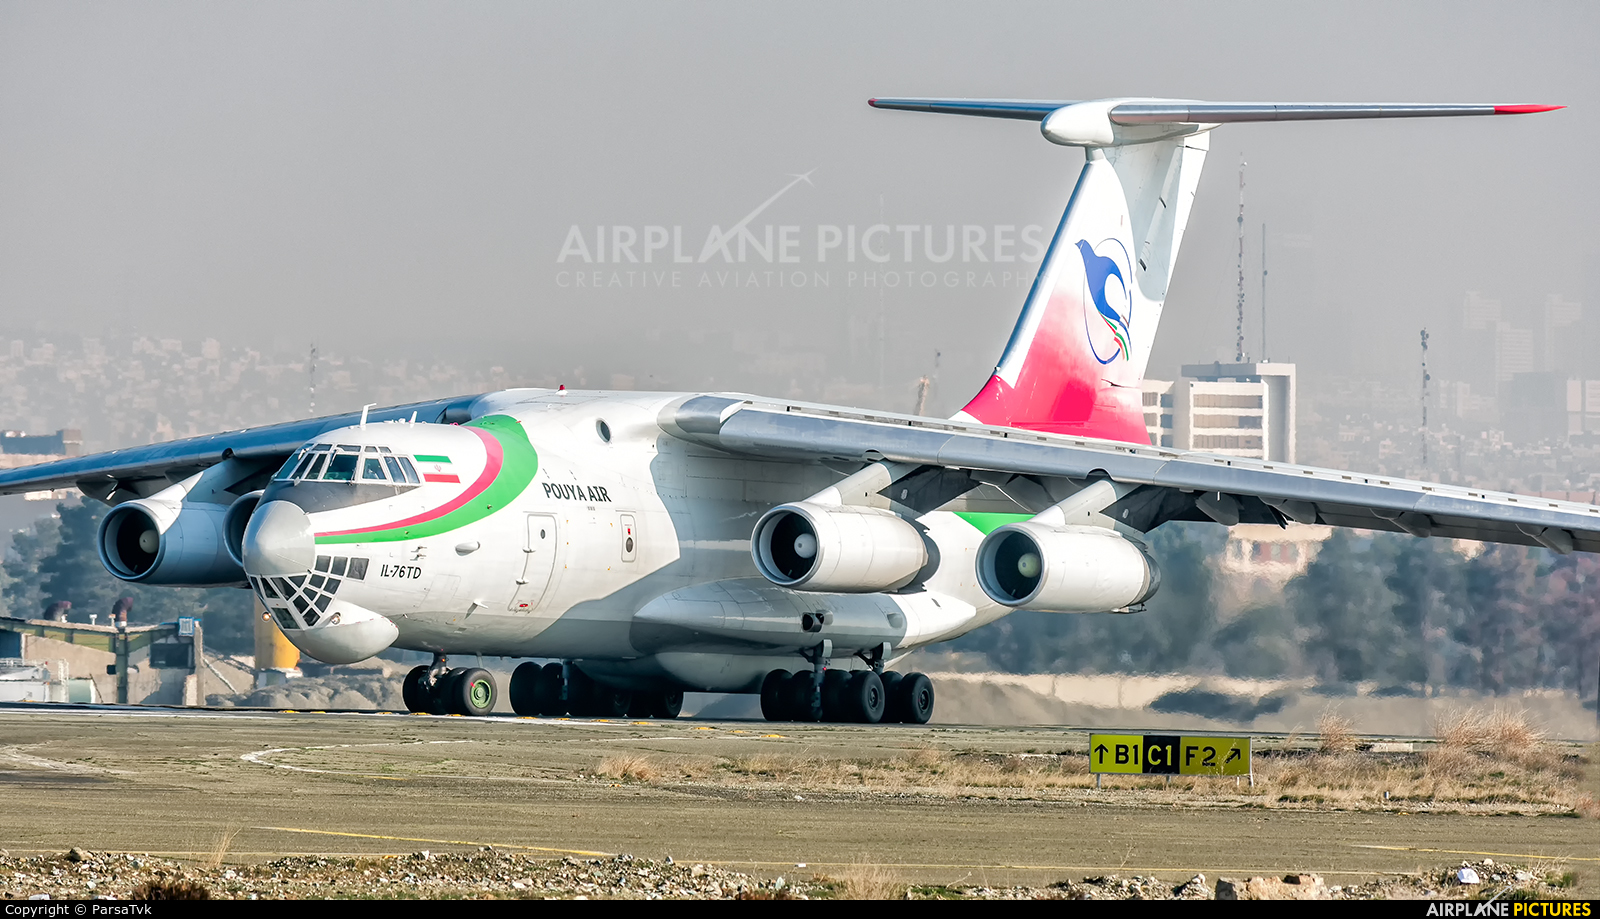 Pouya Air EP-PUS aircraft at Tehran - Mehrabad Intl